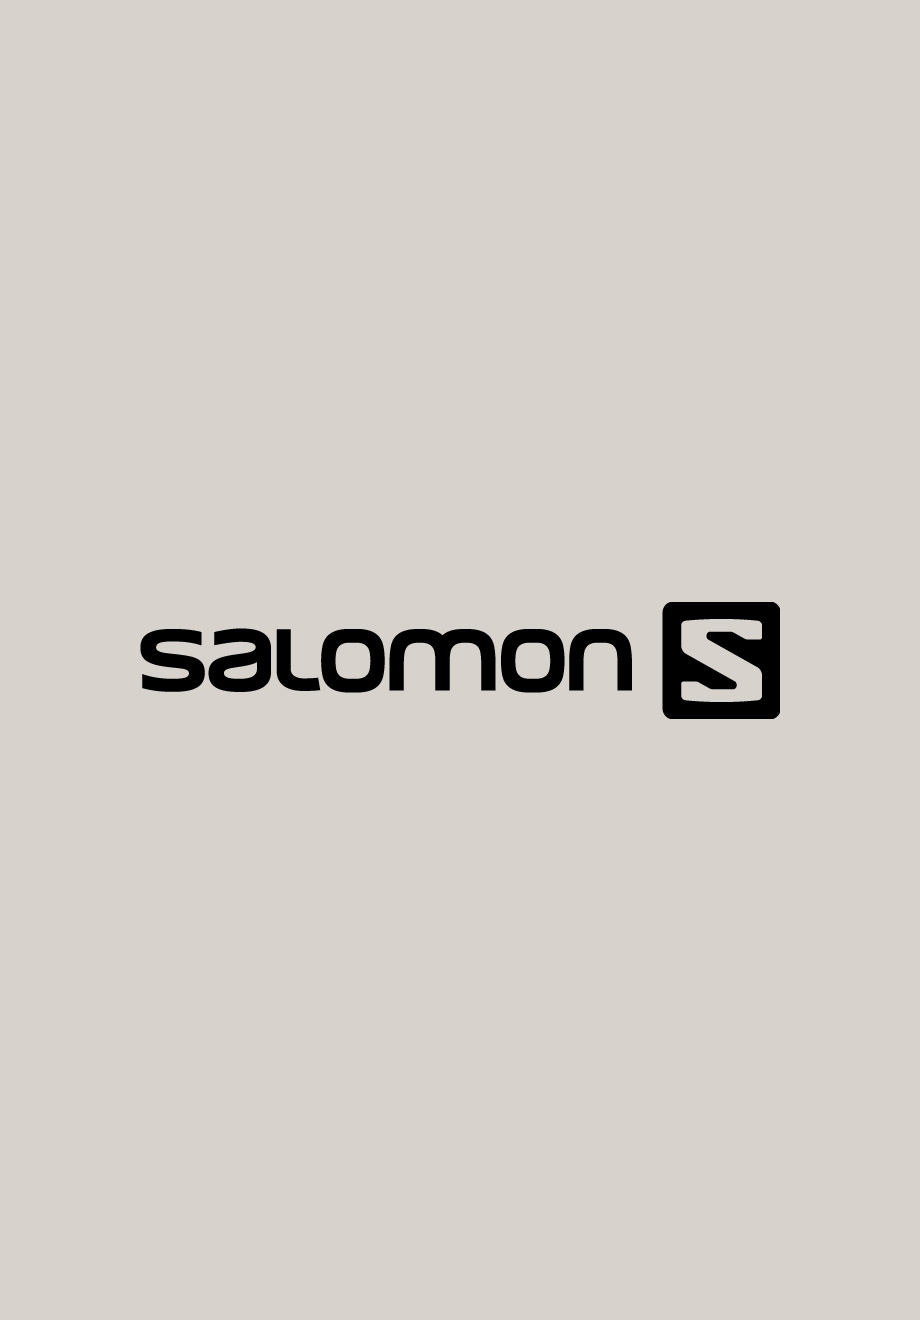 Salomon Skis – John Callas